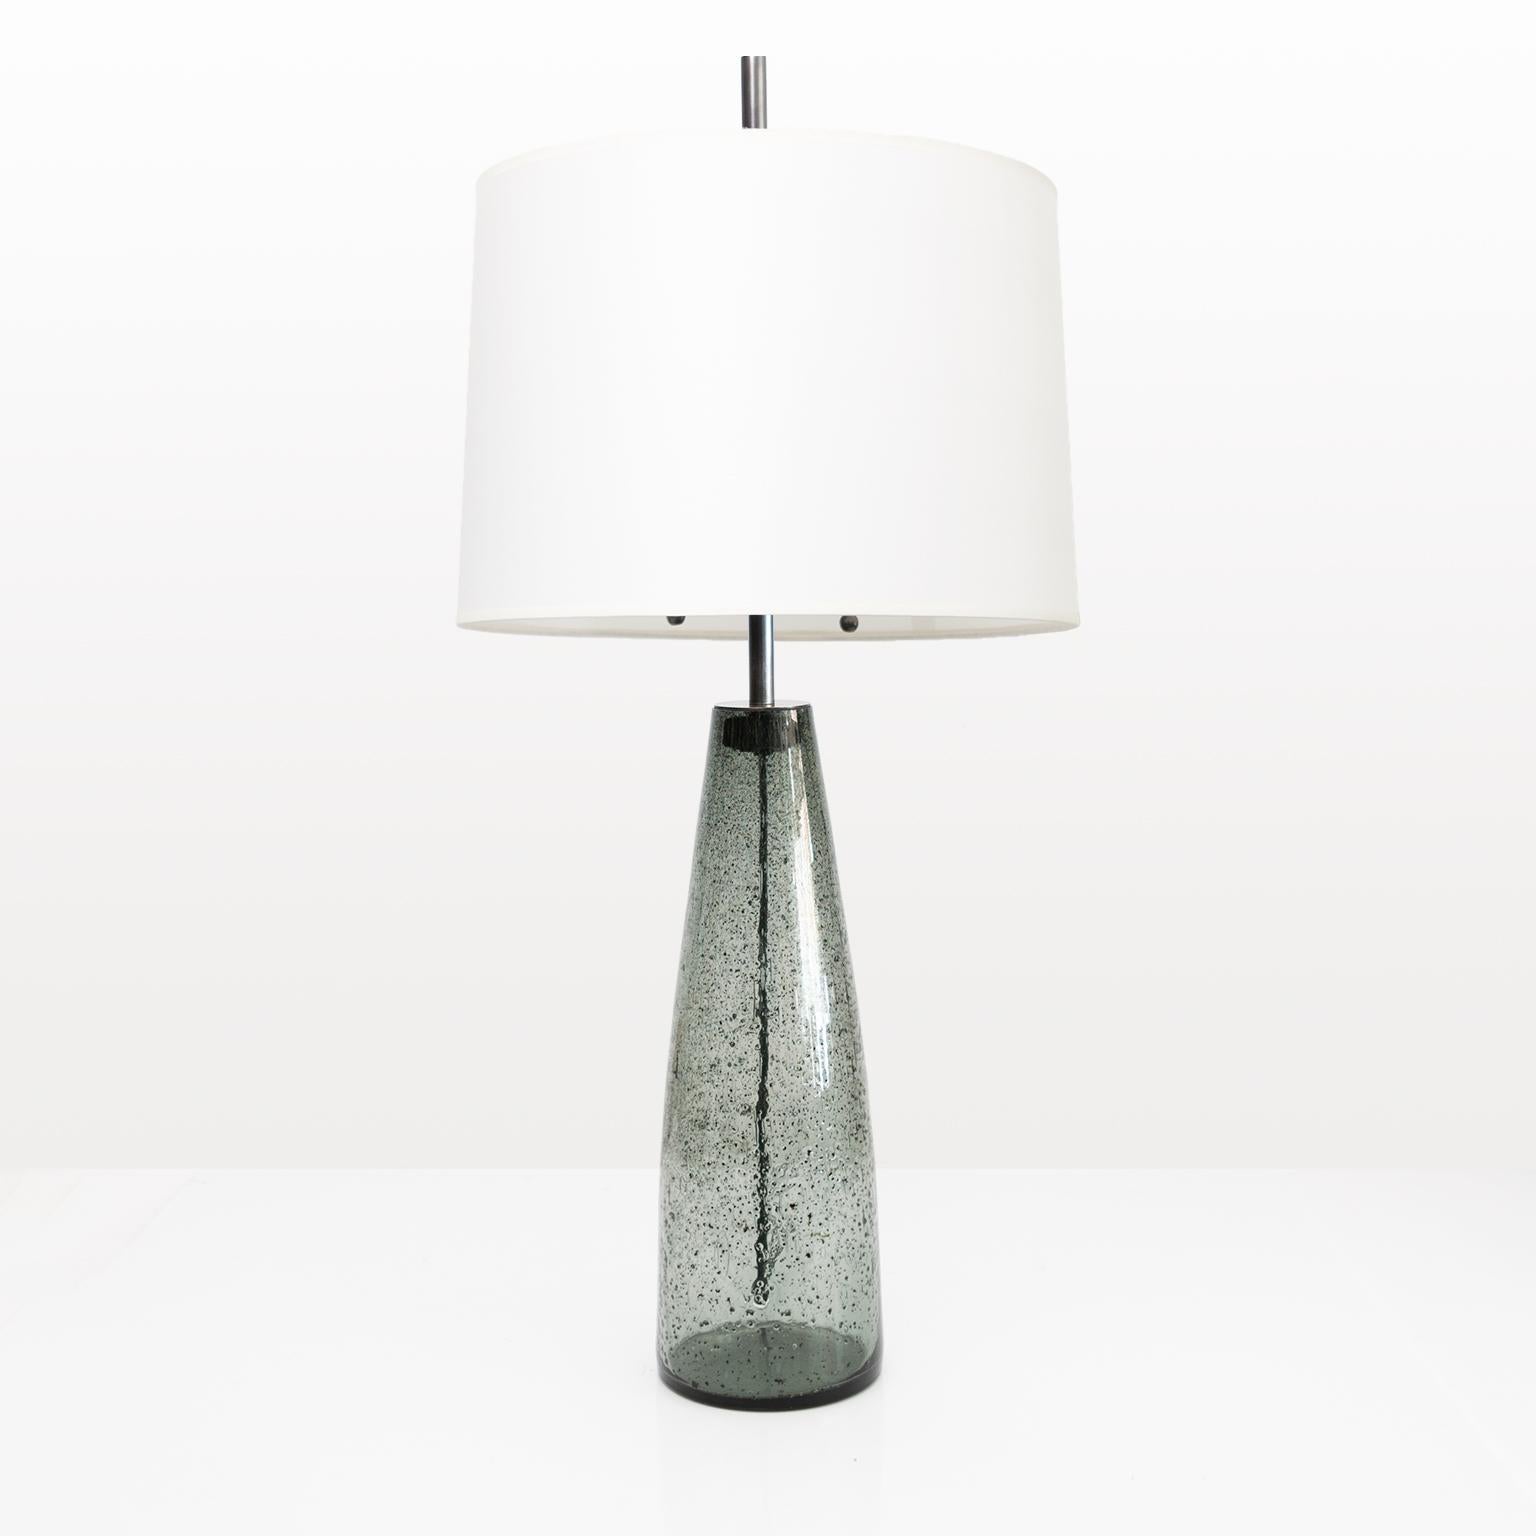 Scandinave Paire de lampes scandinaves modernes Stromboli de Bengt Orup, Hyllinge Glasbruk en vente